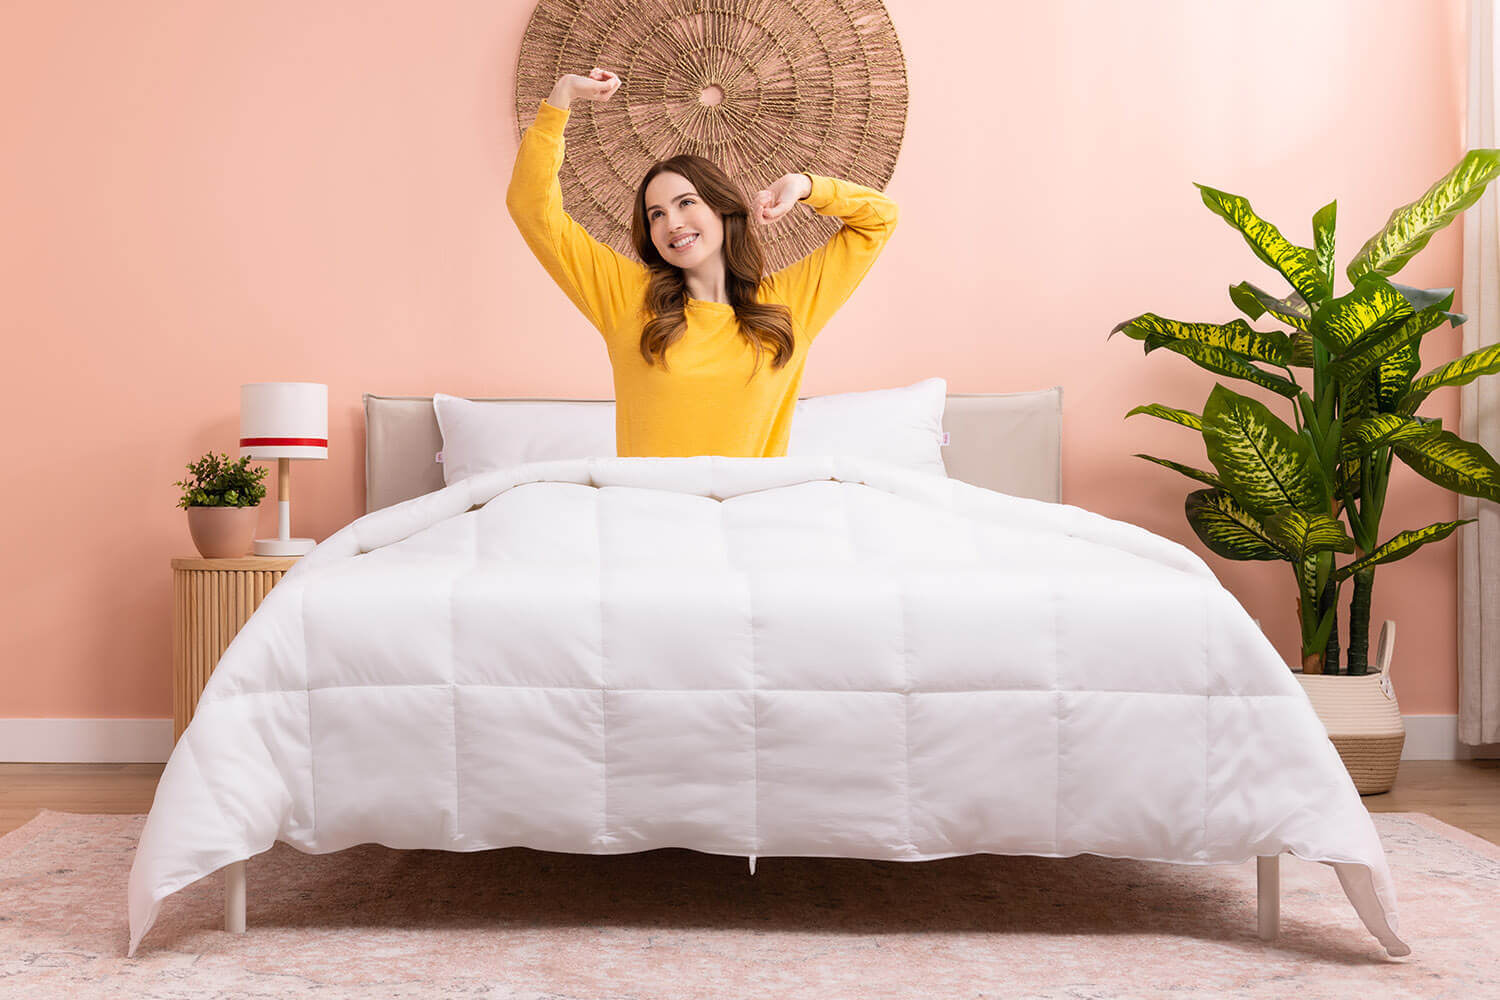 Femme se réveillant dans son lit avec sa couette en duvet synthétique Douglas